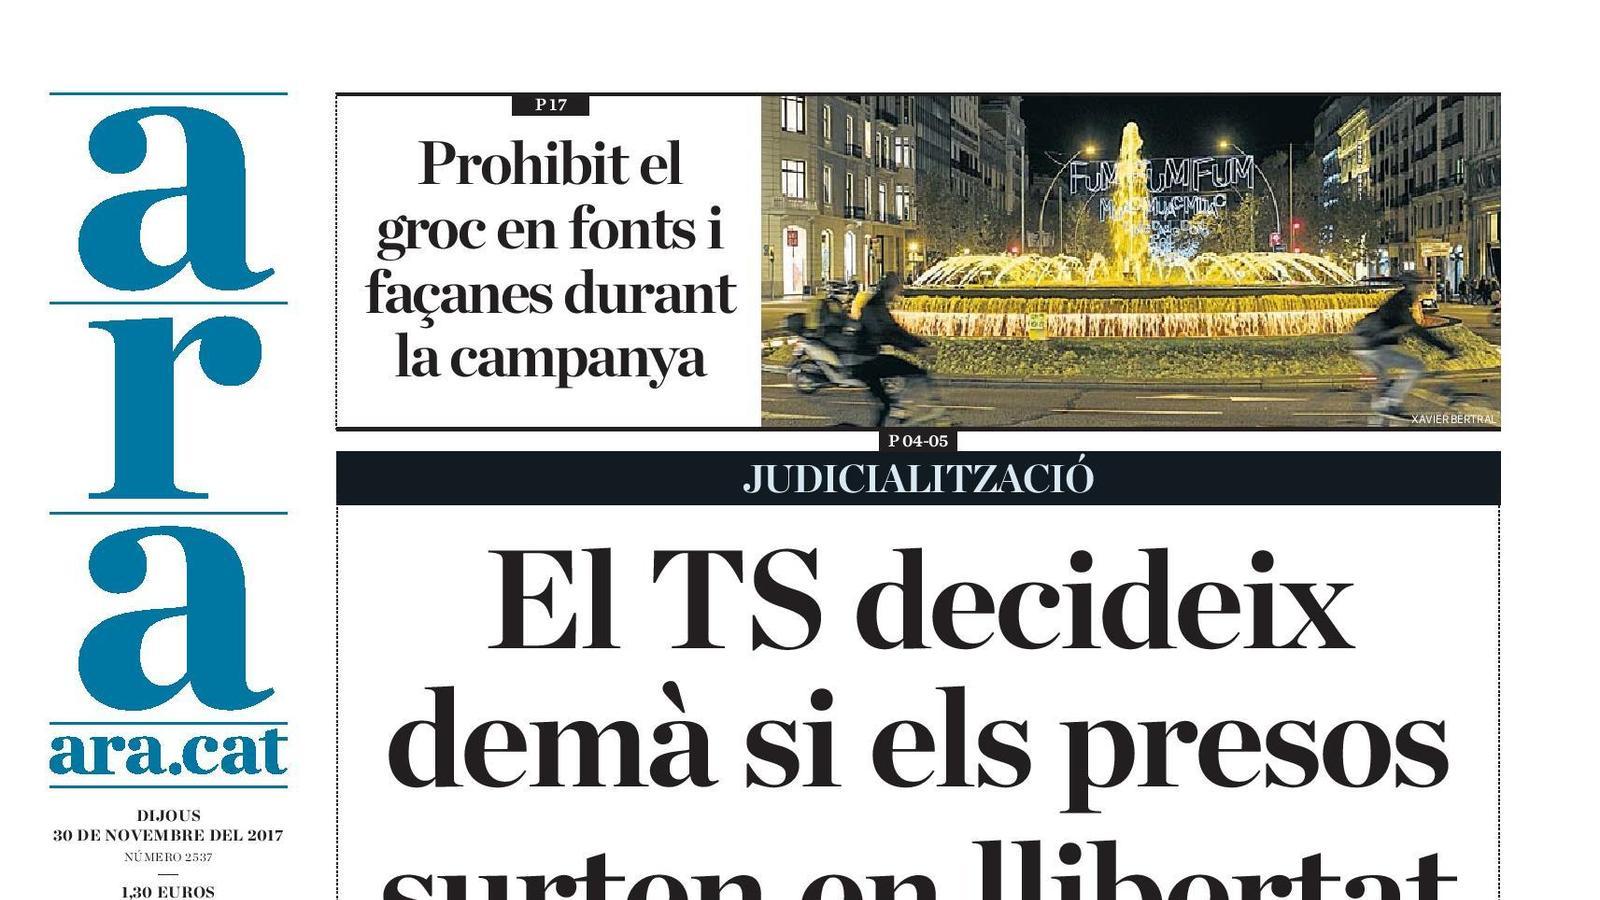 "El TS decideix demà si els presos surten en llibertat", portada de l'ARA